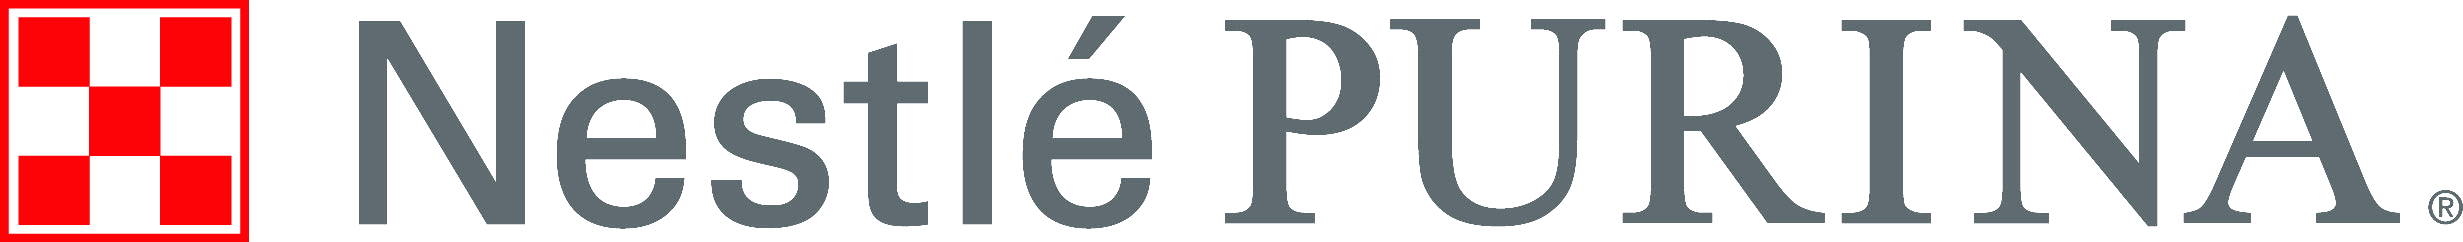 File:Nestlé Purina Petcare Corporate Logo.png.